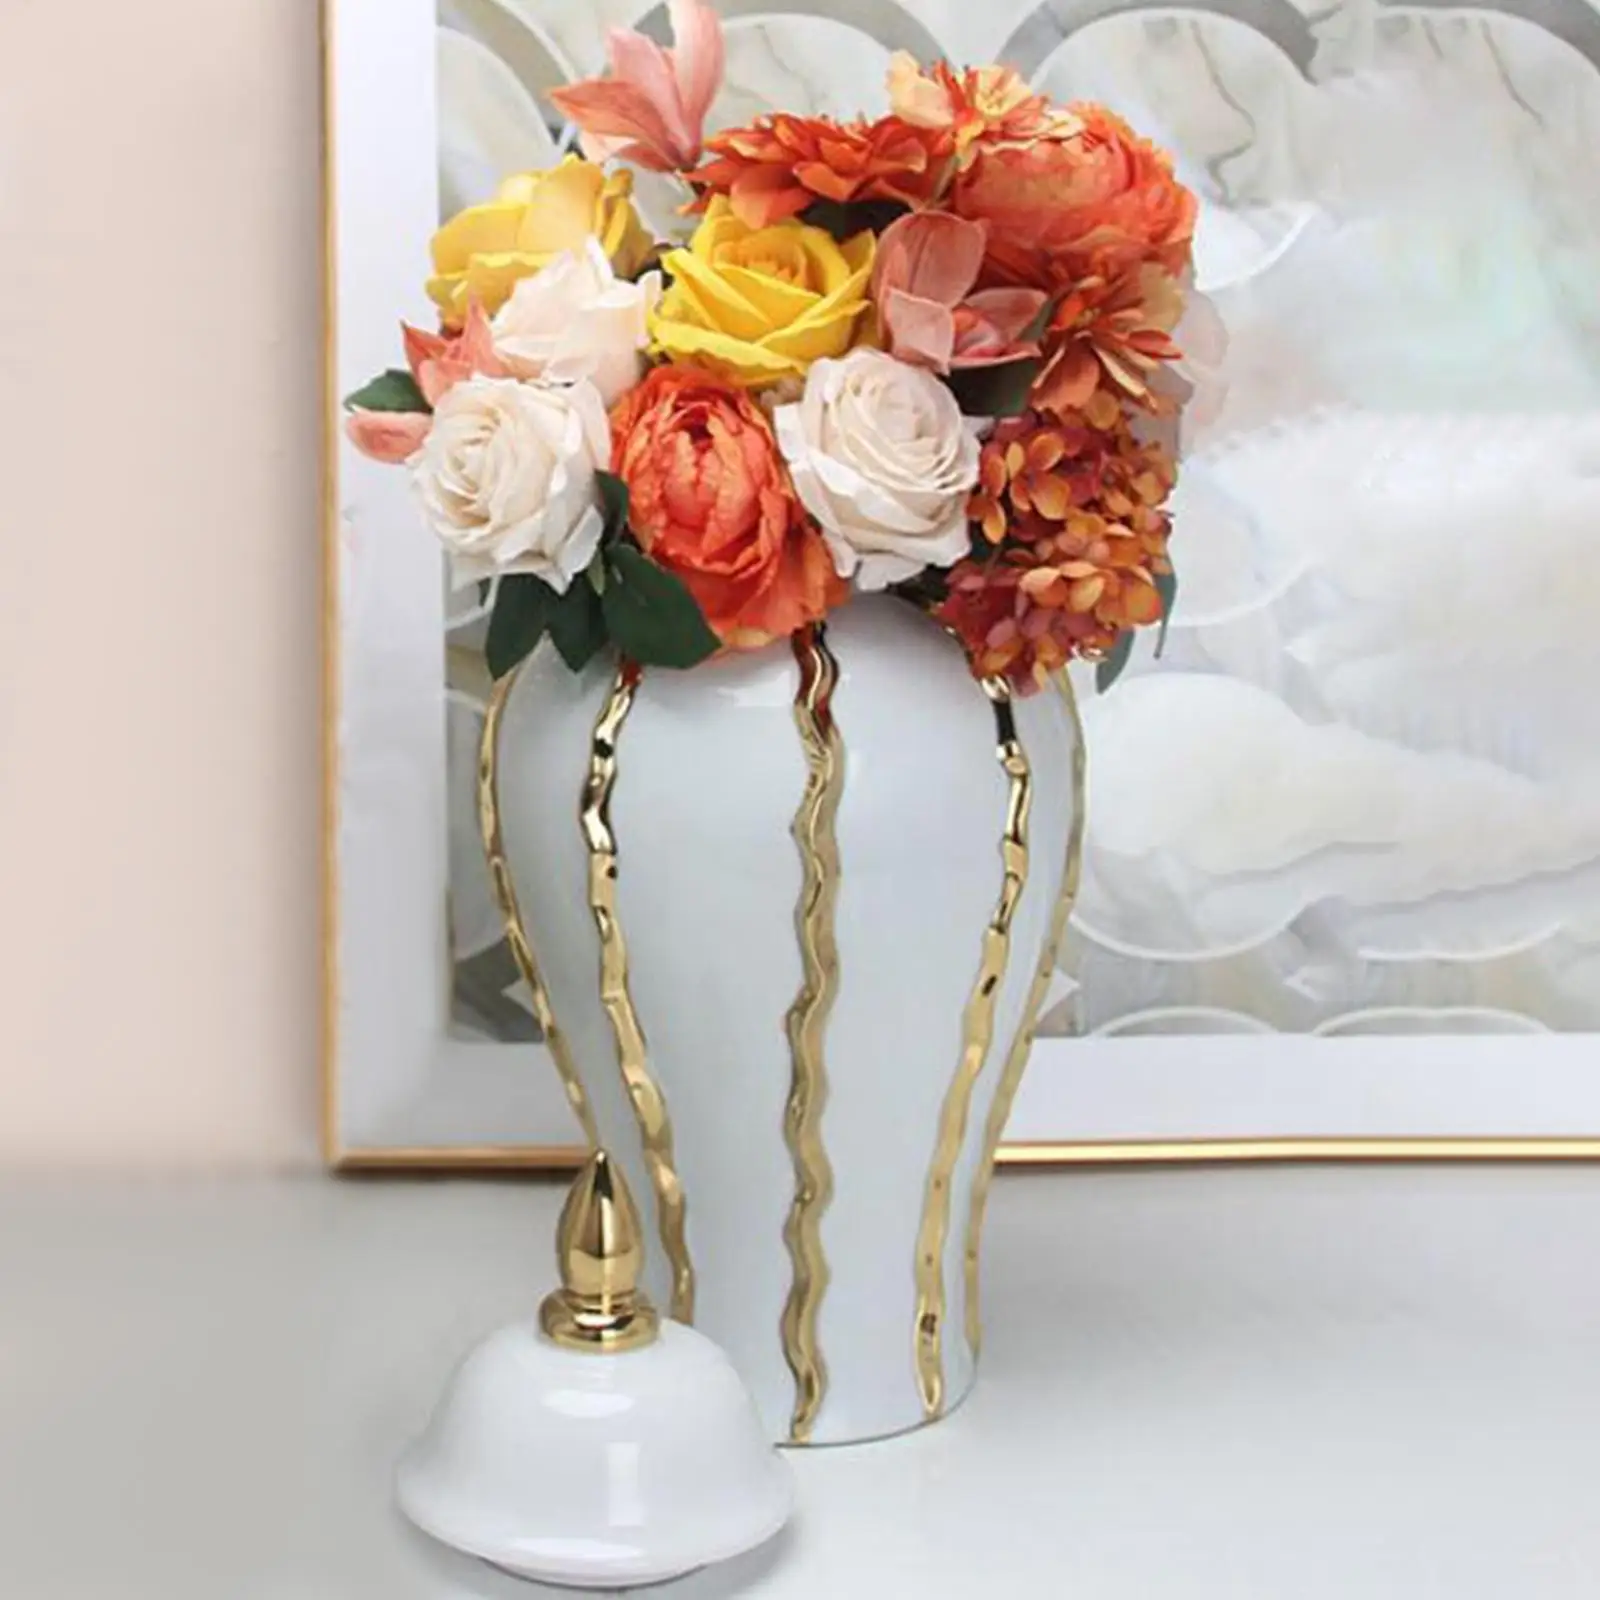 Ceramic Flower Vase Fine Workmanship Display Porcelain Ginger Jar Temple Jar for Bedroom Weddings Livingroom Office Desk